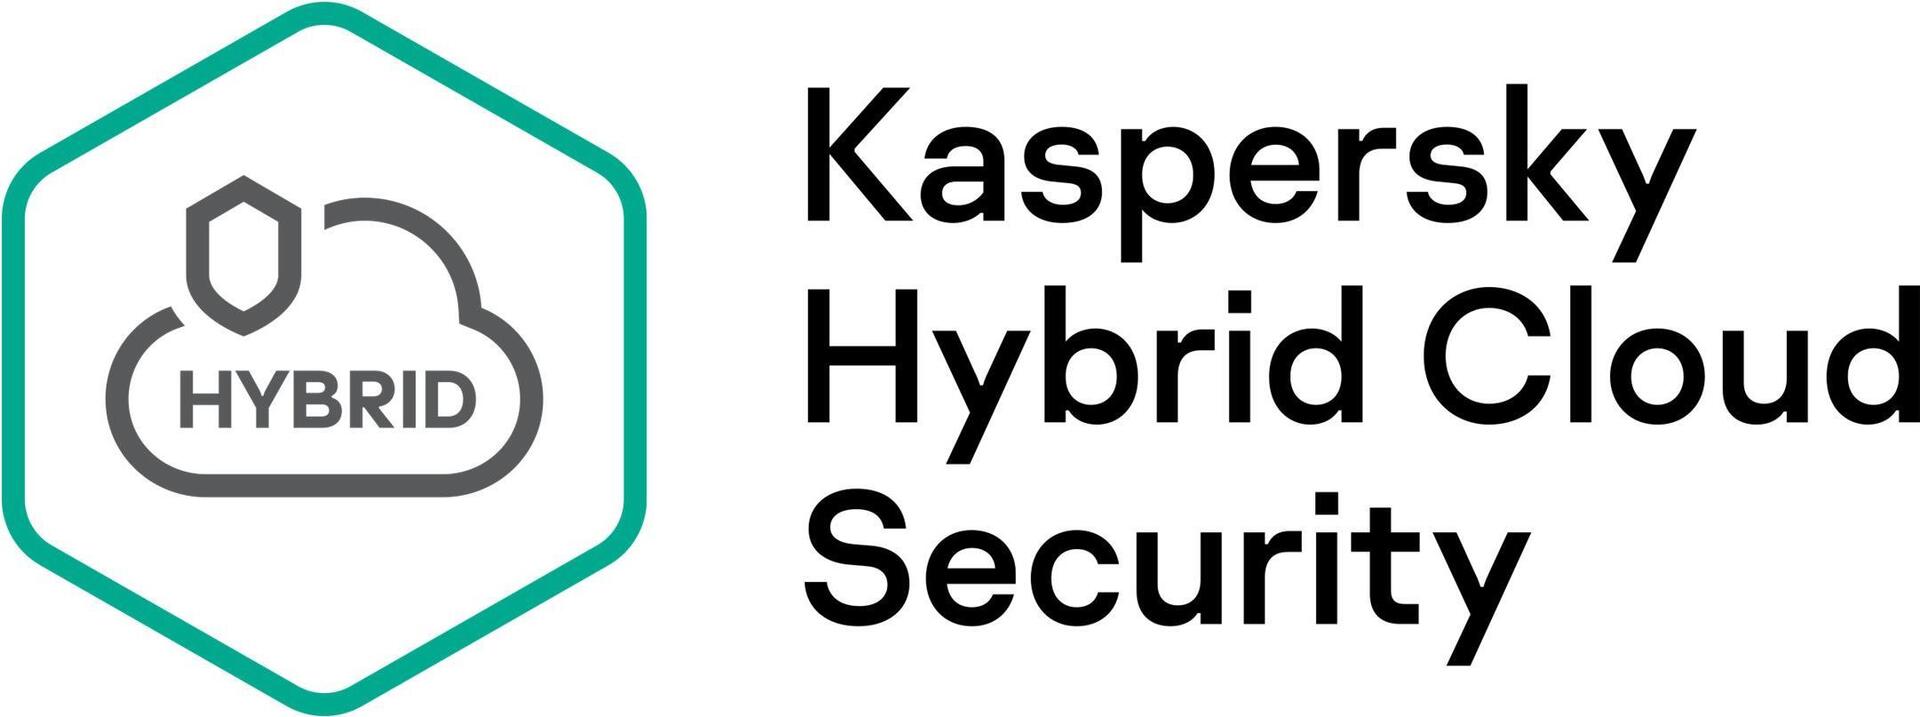 Kaspersky Hybrid Cloud Security (KL4554XASTR)